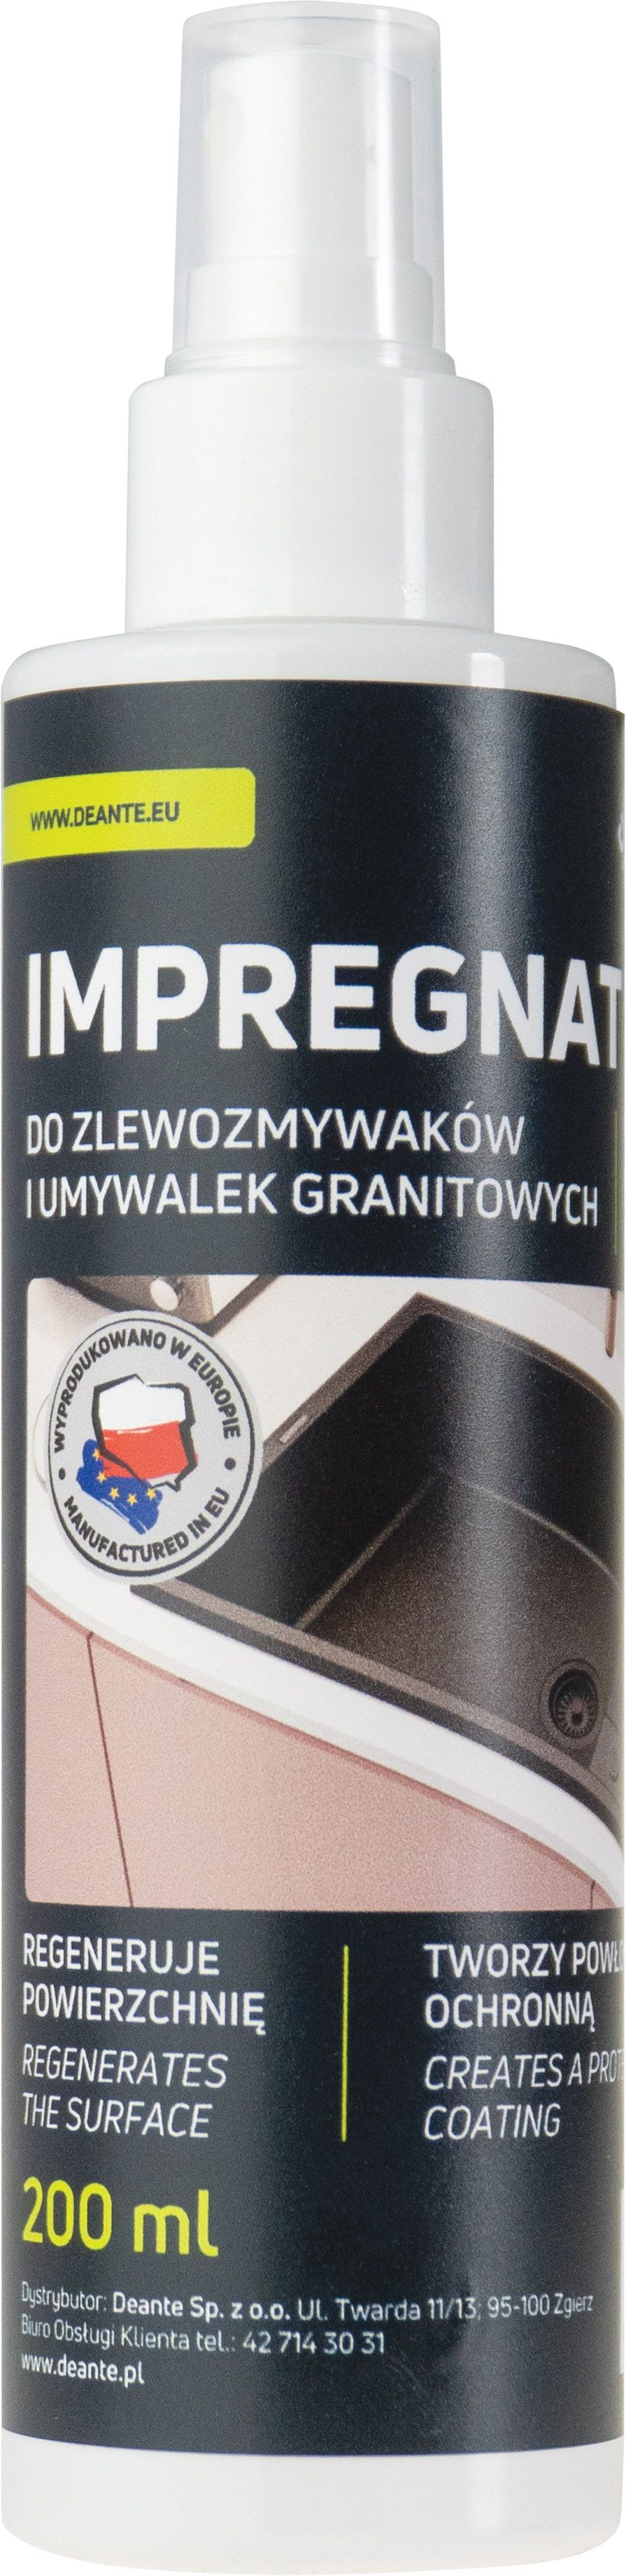 Protezione, per i prodotti in granito - 200 ml - ZZZ_020I - Główne zdjęcie produktowe